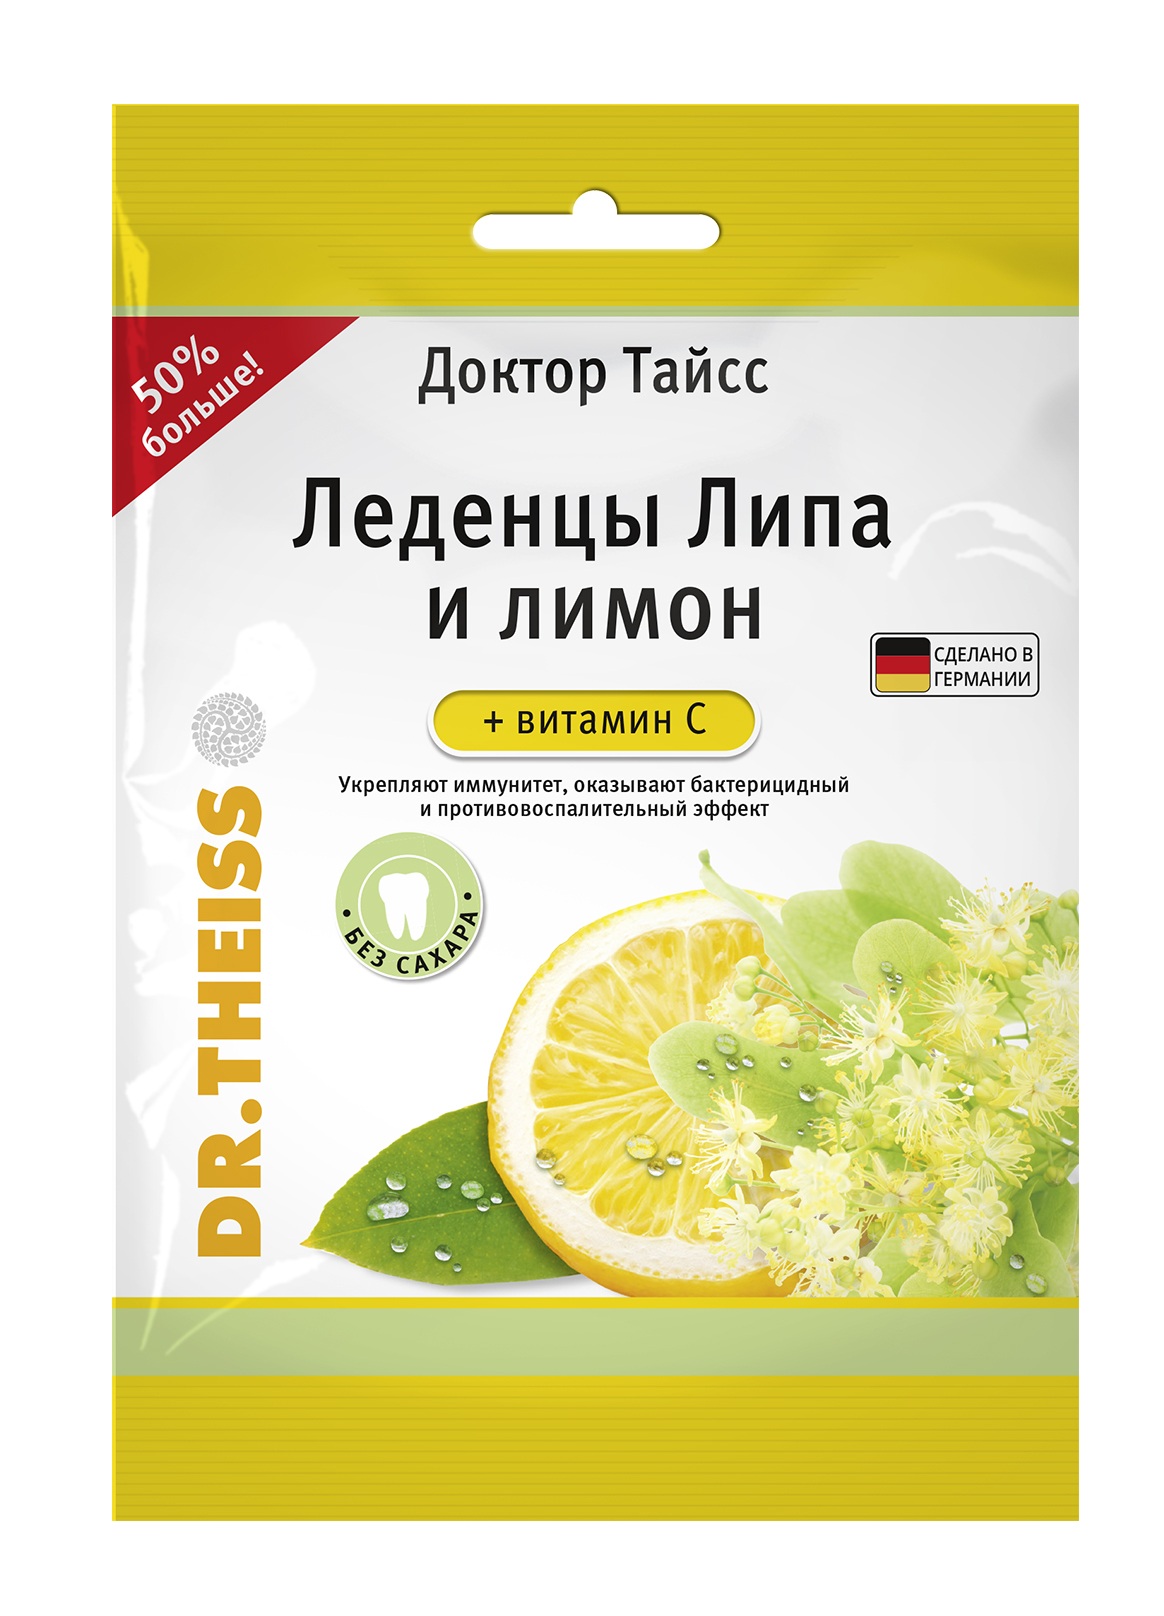 Купить Доктор Тайсс леденцы липа и лимон+витамин С 75г, Dr.Theiss Naturwaren GmbH